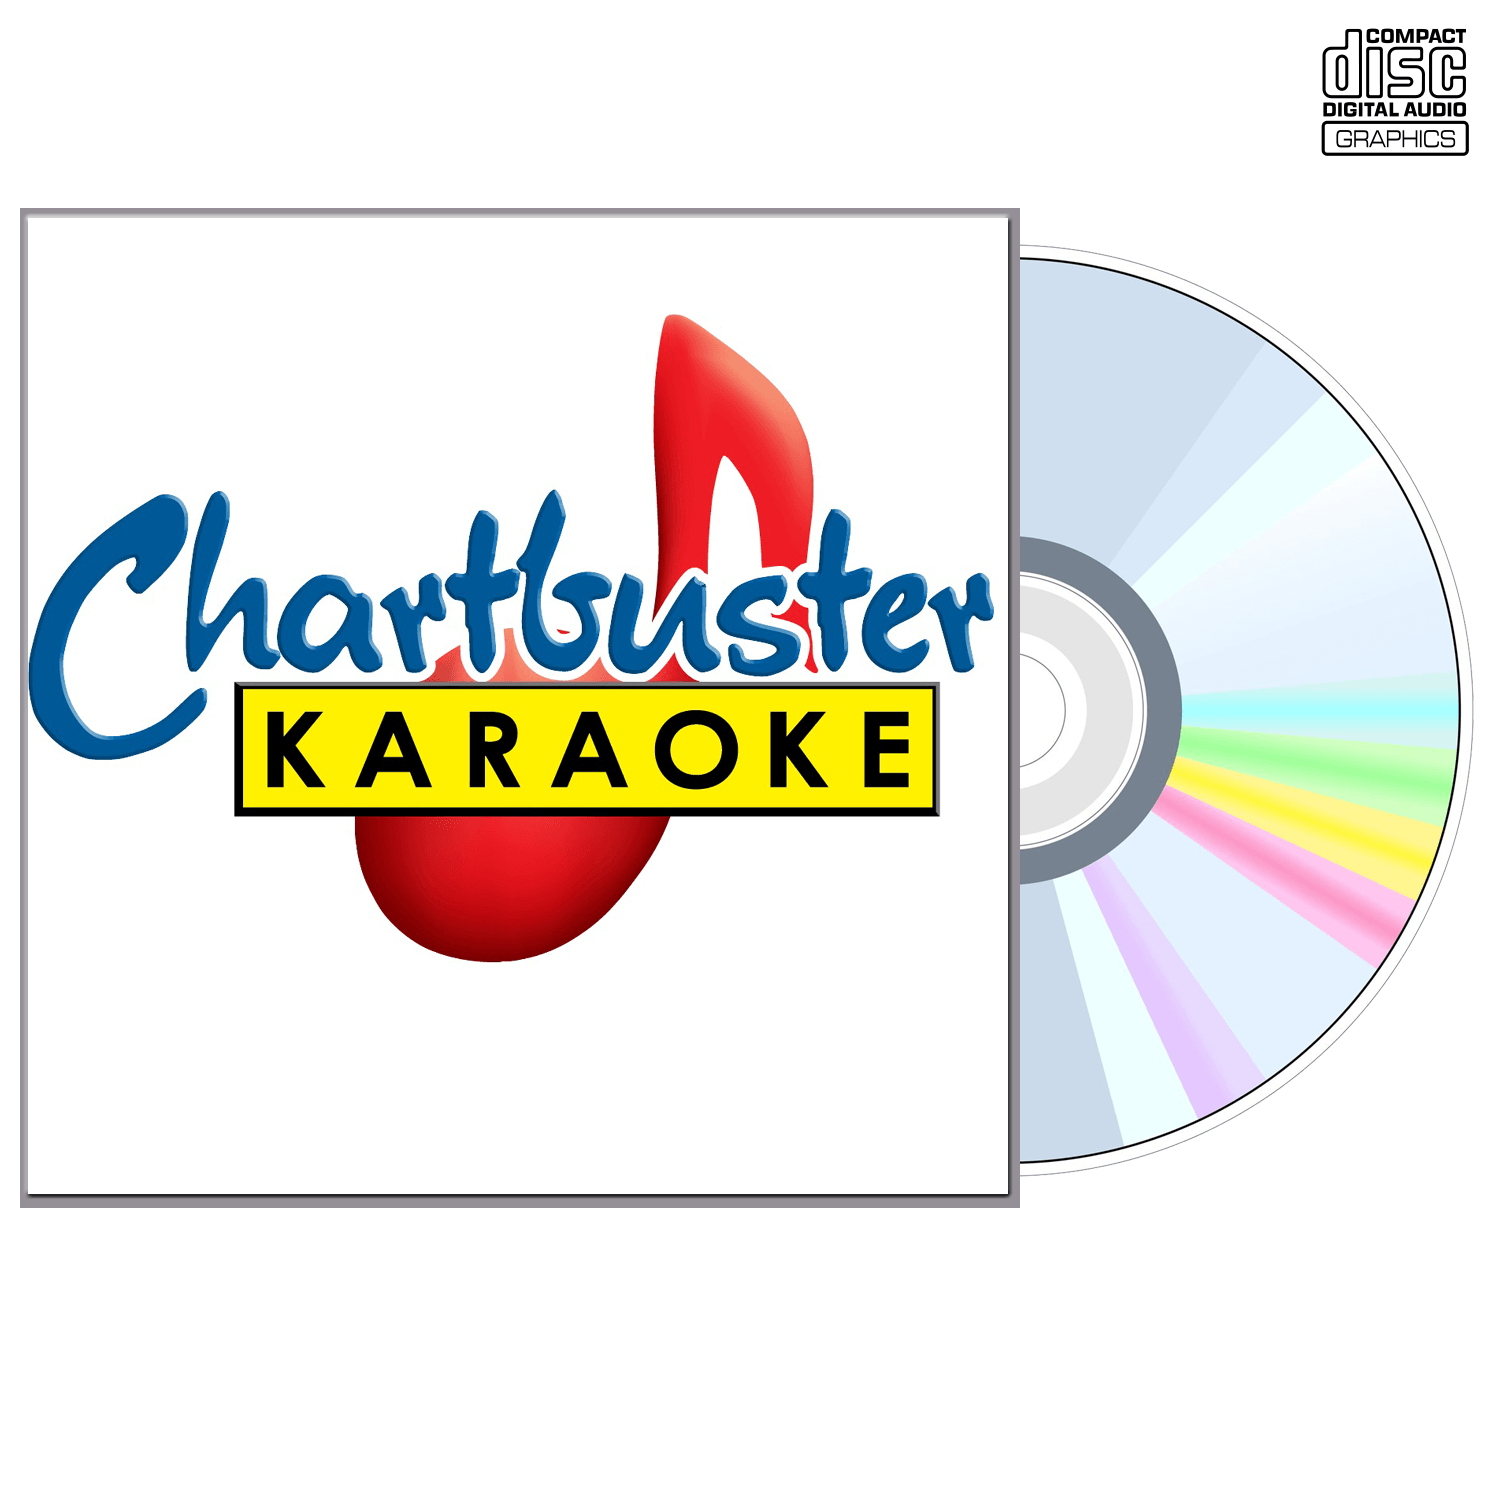 Aaron Lines - CD+G - Chartbuster Karaoke - Karaoke Home Entertainment